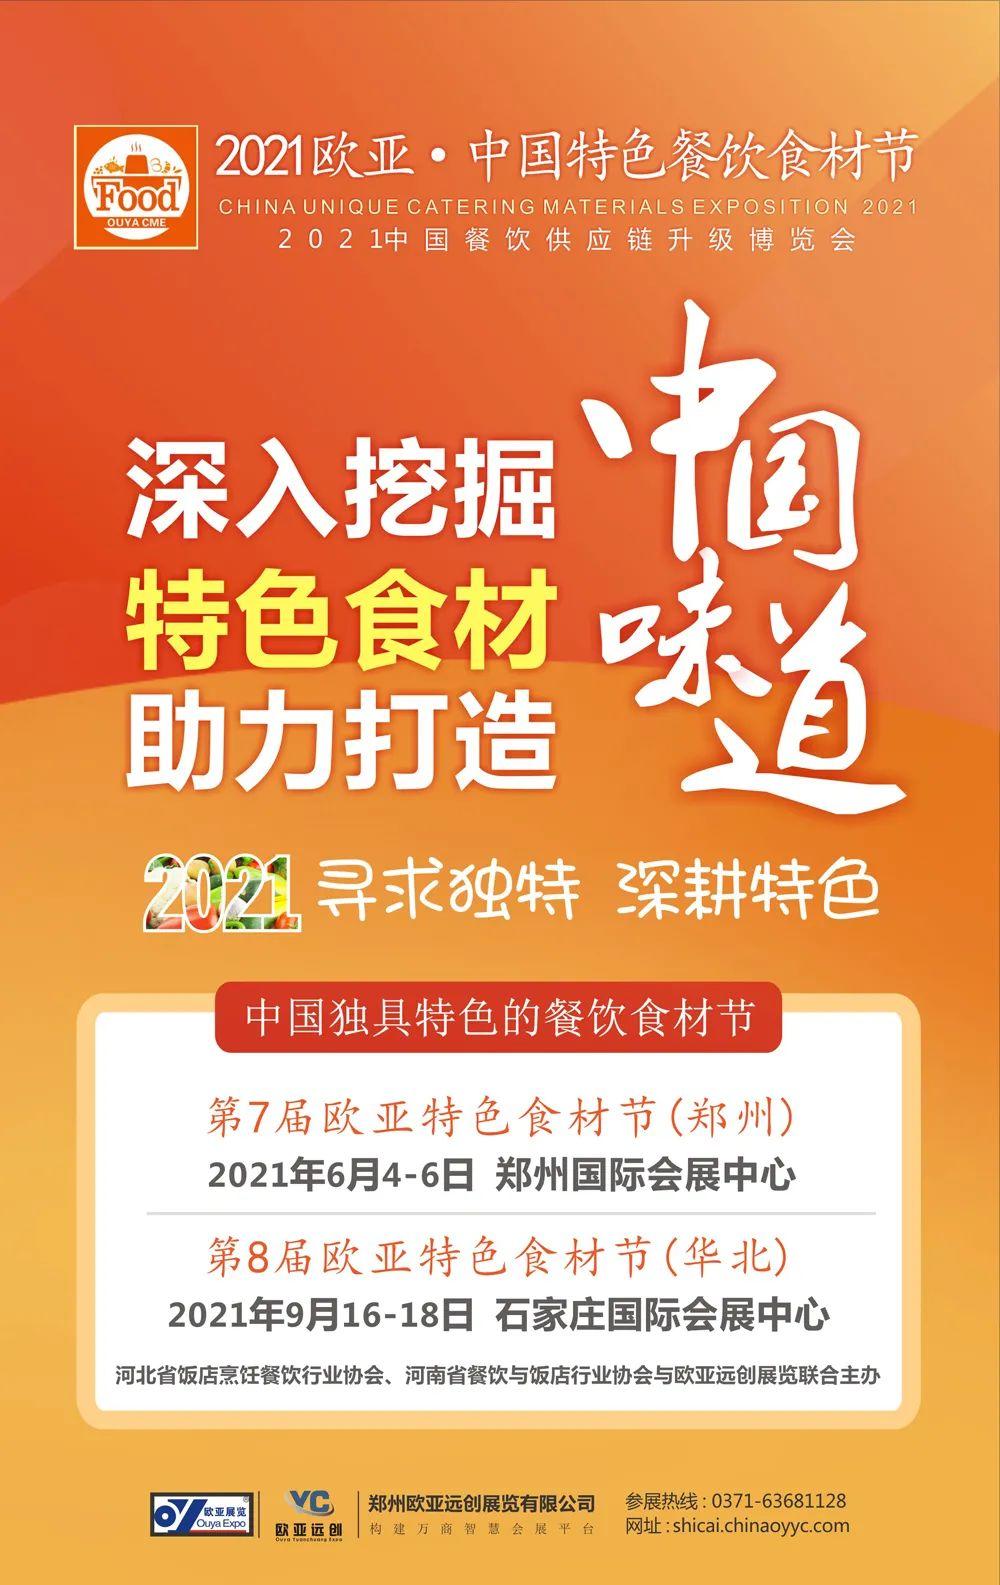 原展会升级为“欧亚·中国特色餐饮食材节”，2021招商招展工作全面启动